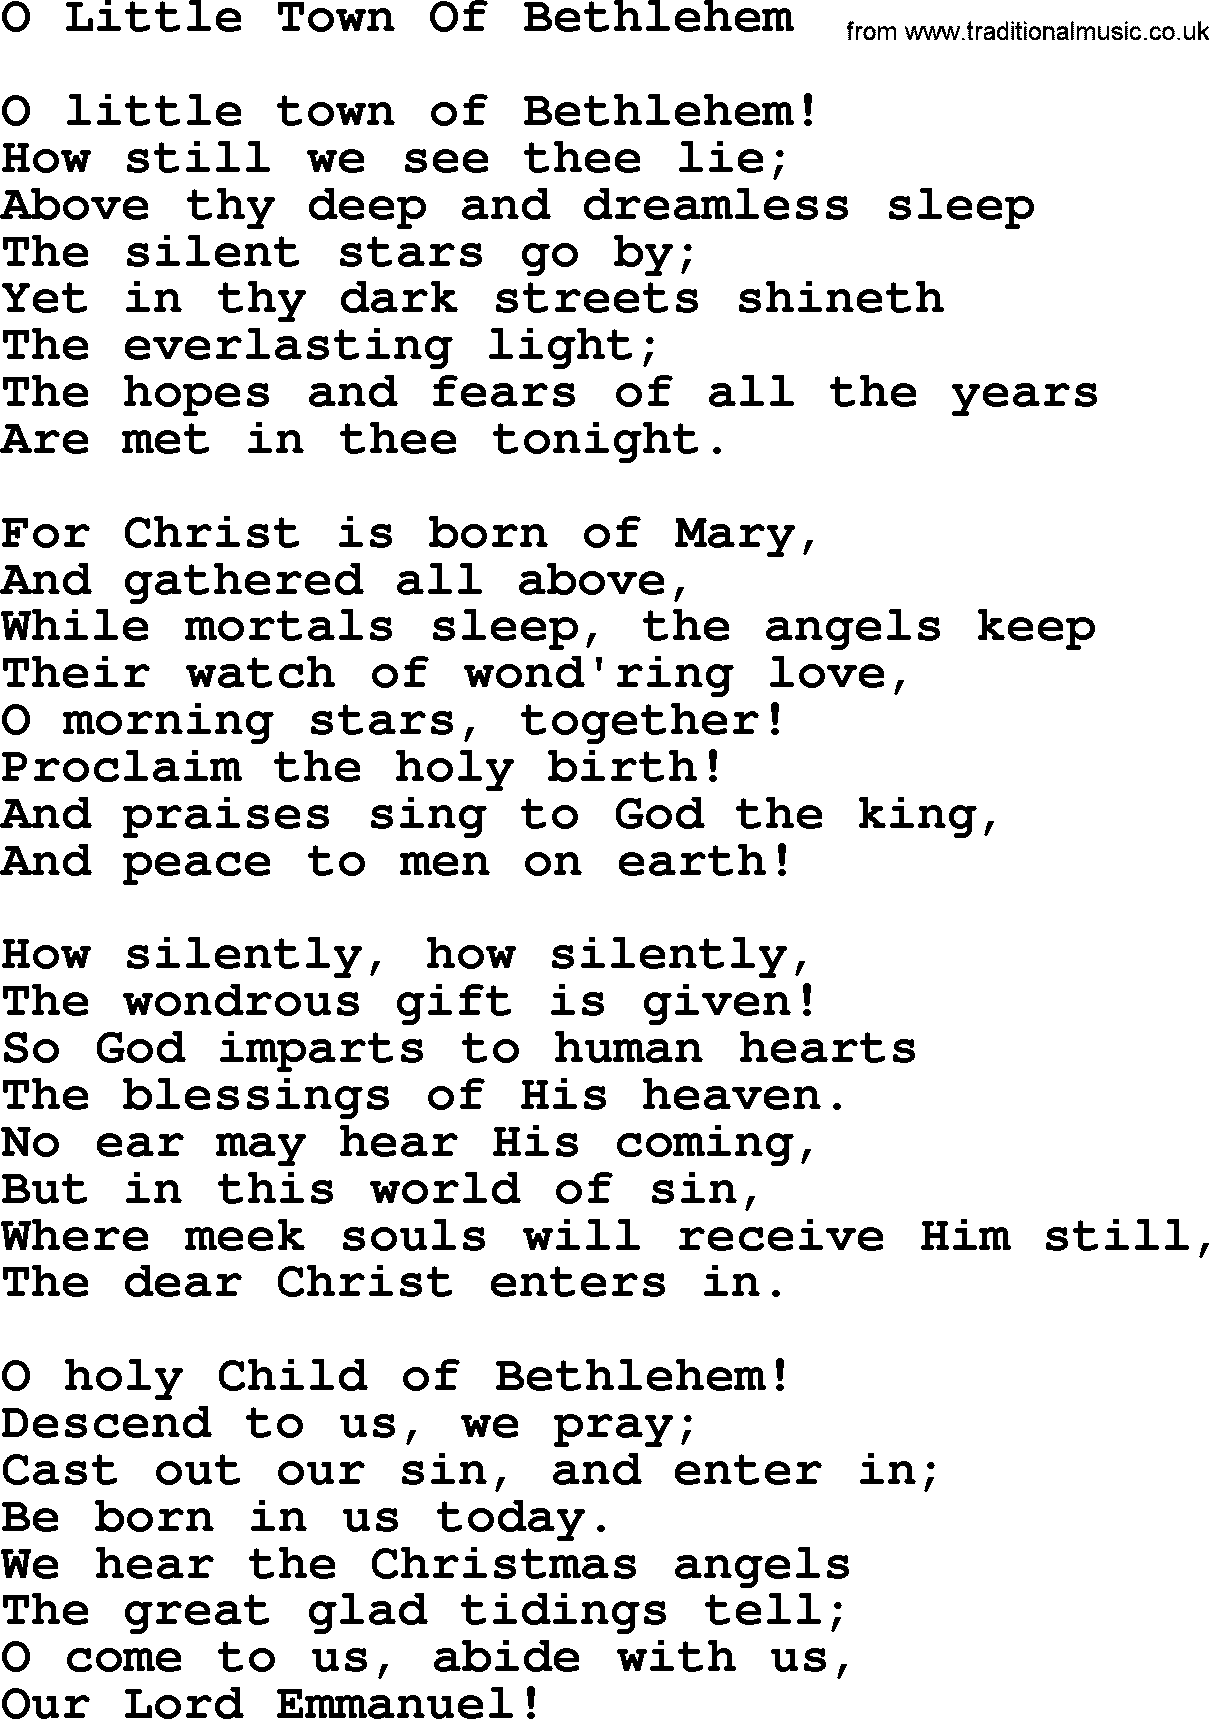 Catholic Hymn: O Little Town Of Bethlehem lyrics with PDF